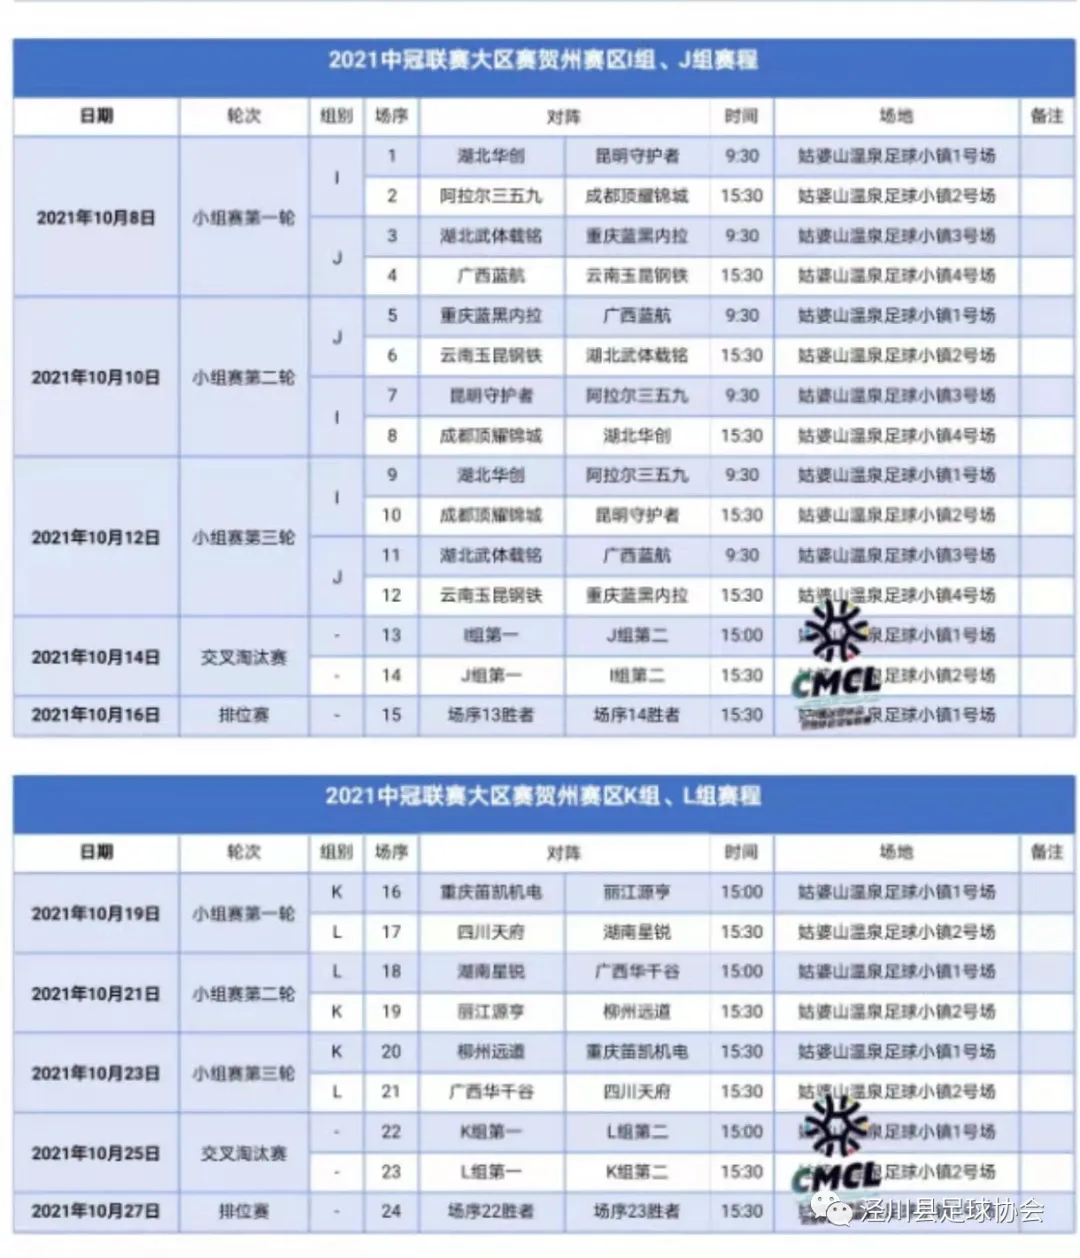 2021中国足球协会会员协会冠军联赛赛程表